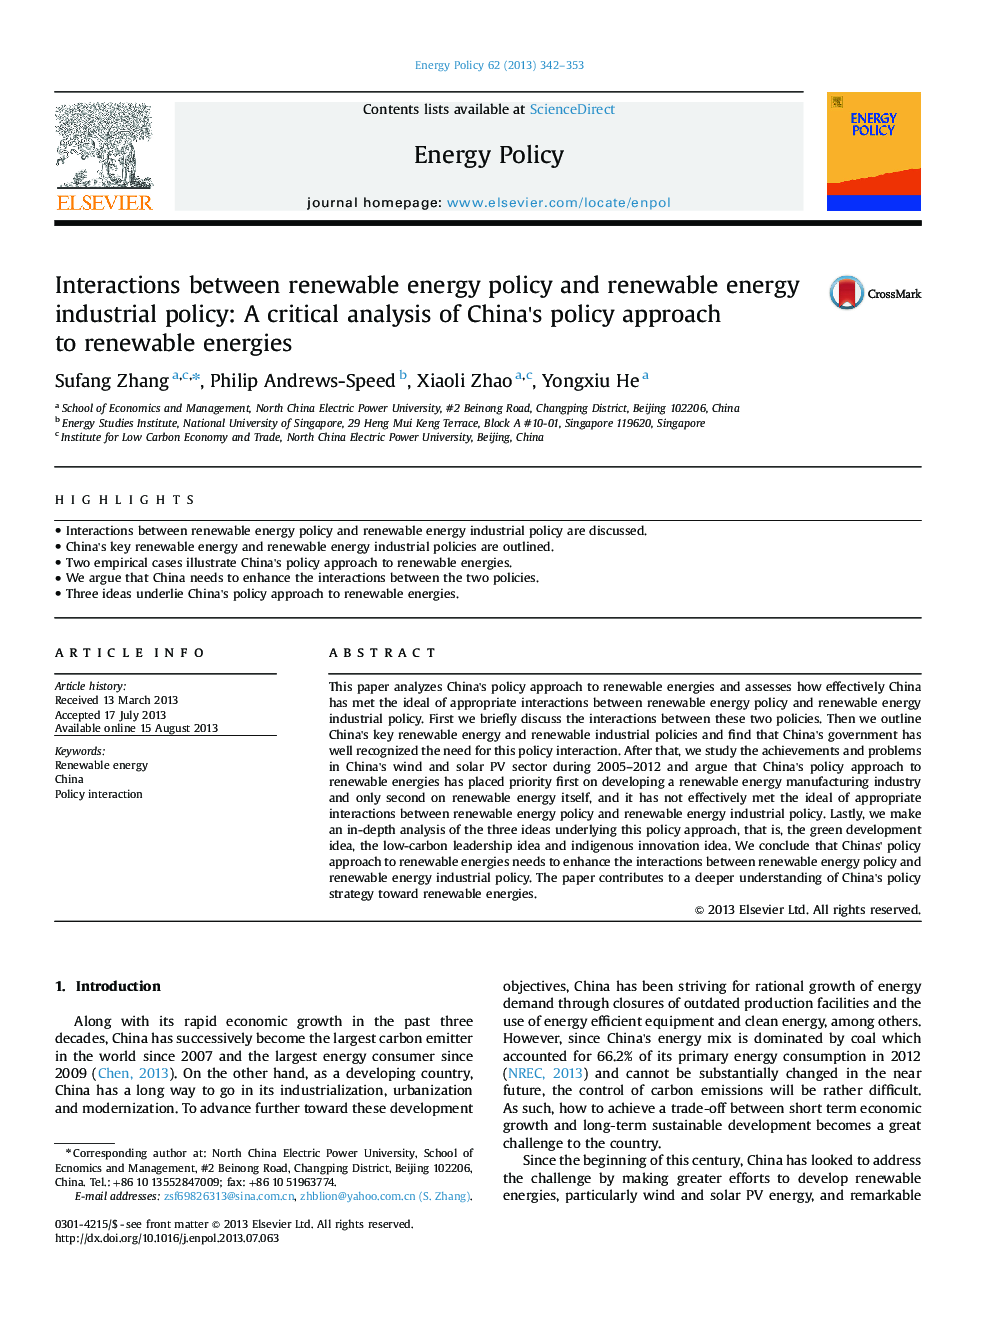 تعاملات بین سیاست انرژی تجدید پذیر و سیاست انرژی صنعتی تجدید پذیر: یک تحلیل انتقادی از رویکرد سیاست چین به انرژی های تجدید پذیر 